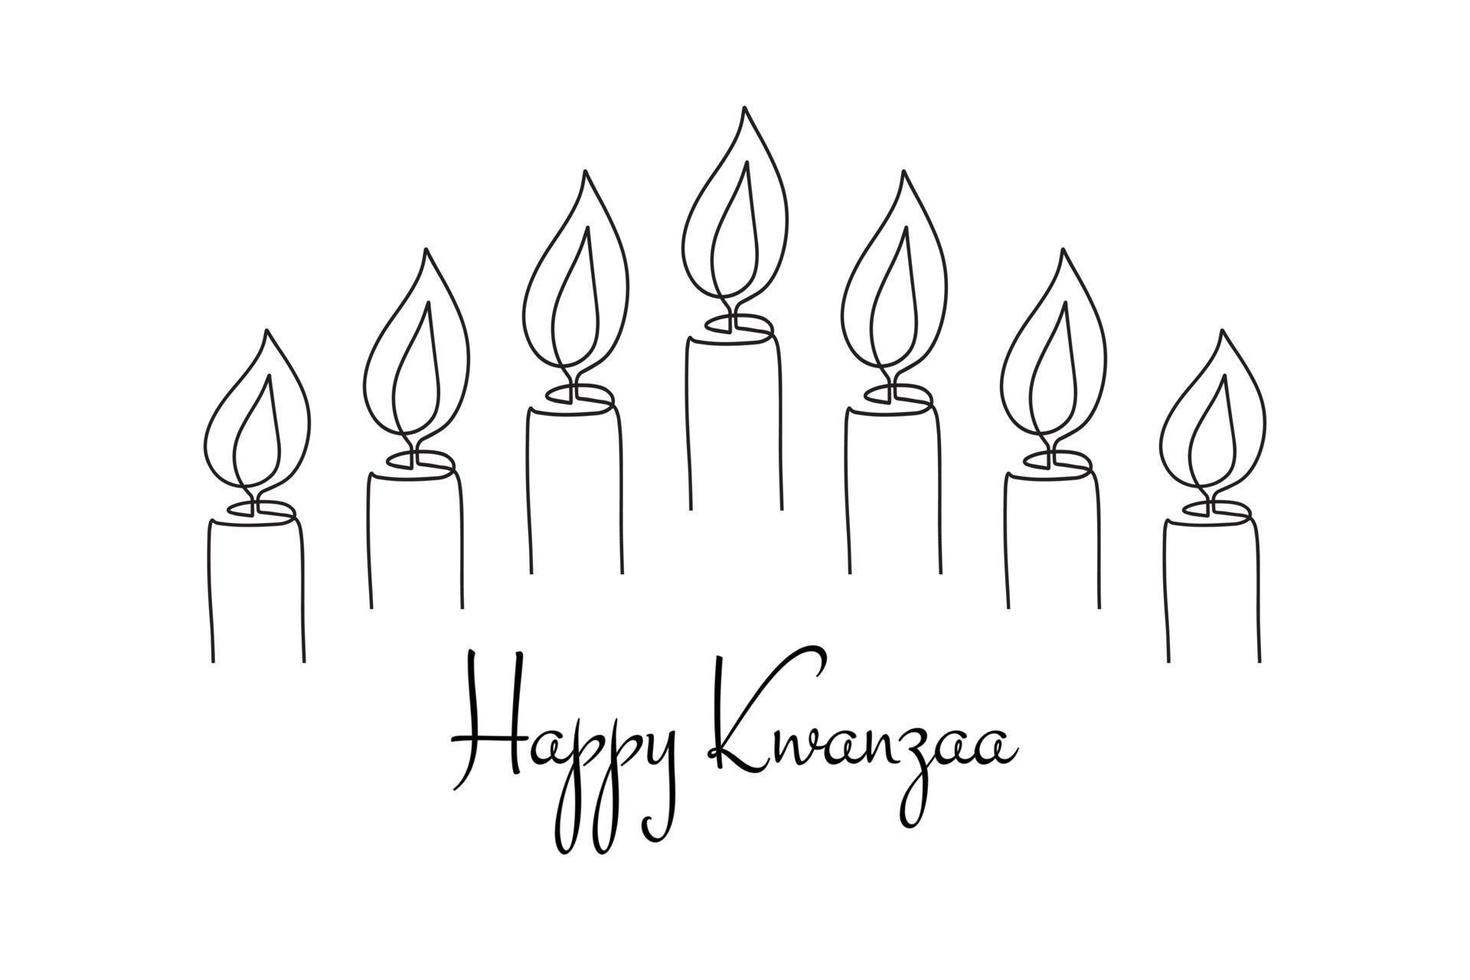 feliz kwanzaa tarjeta de felicitación linda minimalista con siete velas en estilo de línea dibujada a mano de contorno. vector de velas encendidas para kwanza fiesta tradicional del festival de la herencia étnica afroamericana